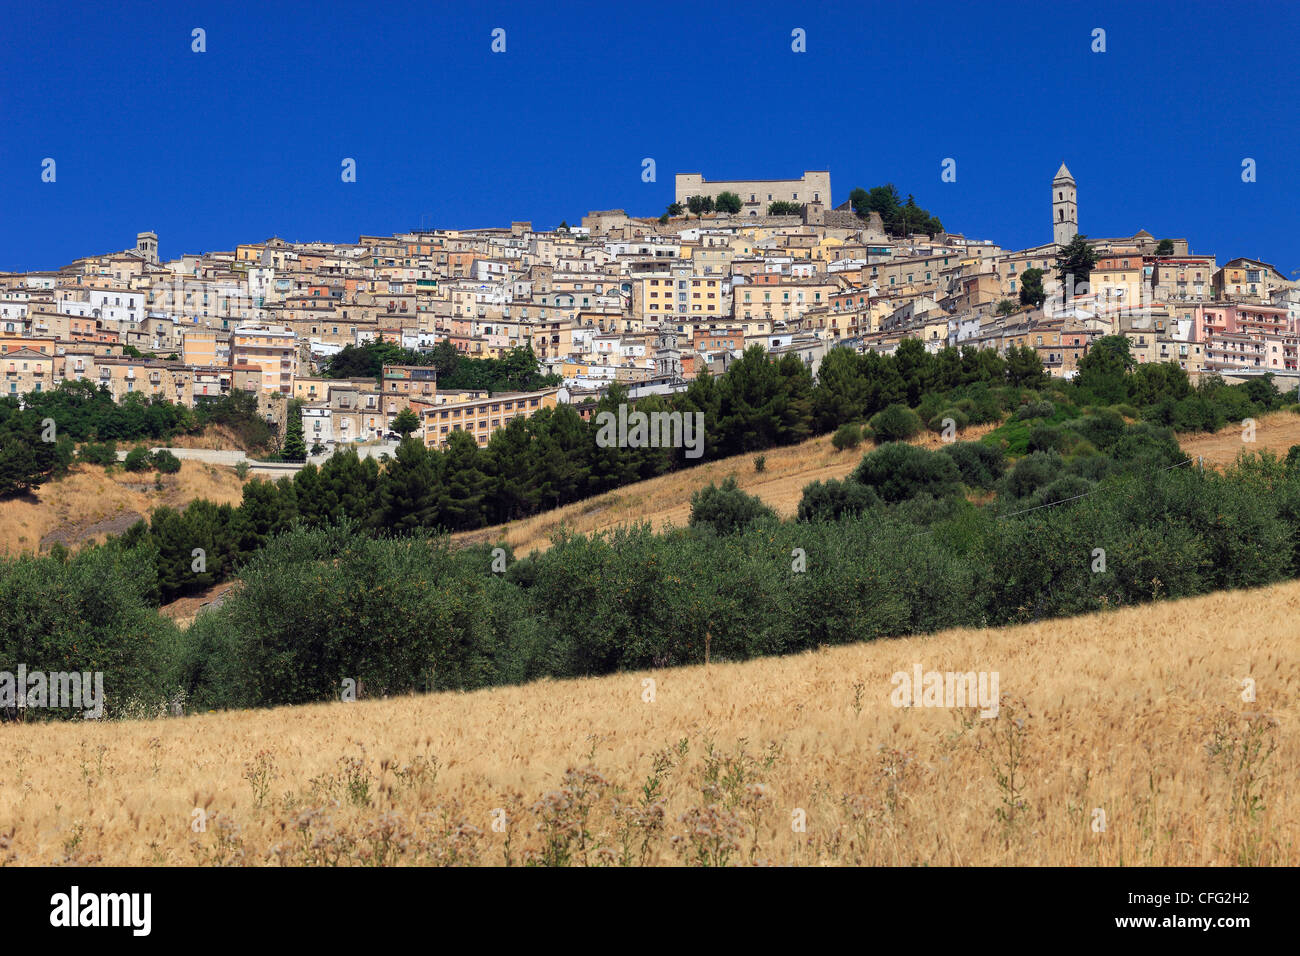 Italy, Apulia, Sant Agata di Puglia, Cityscape Stock Photo